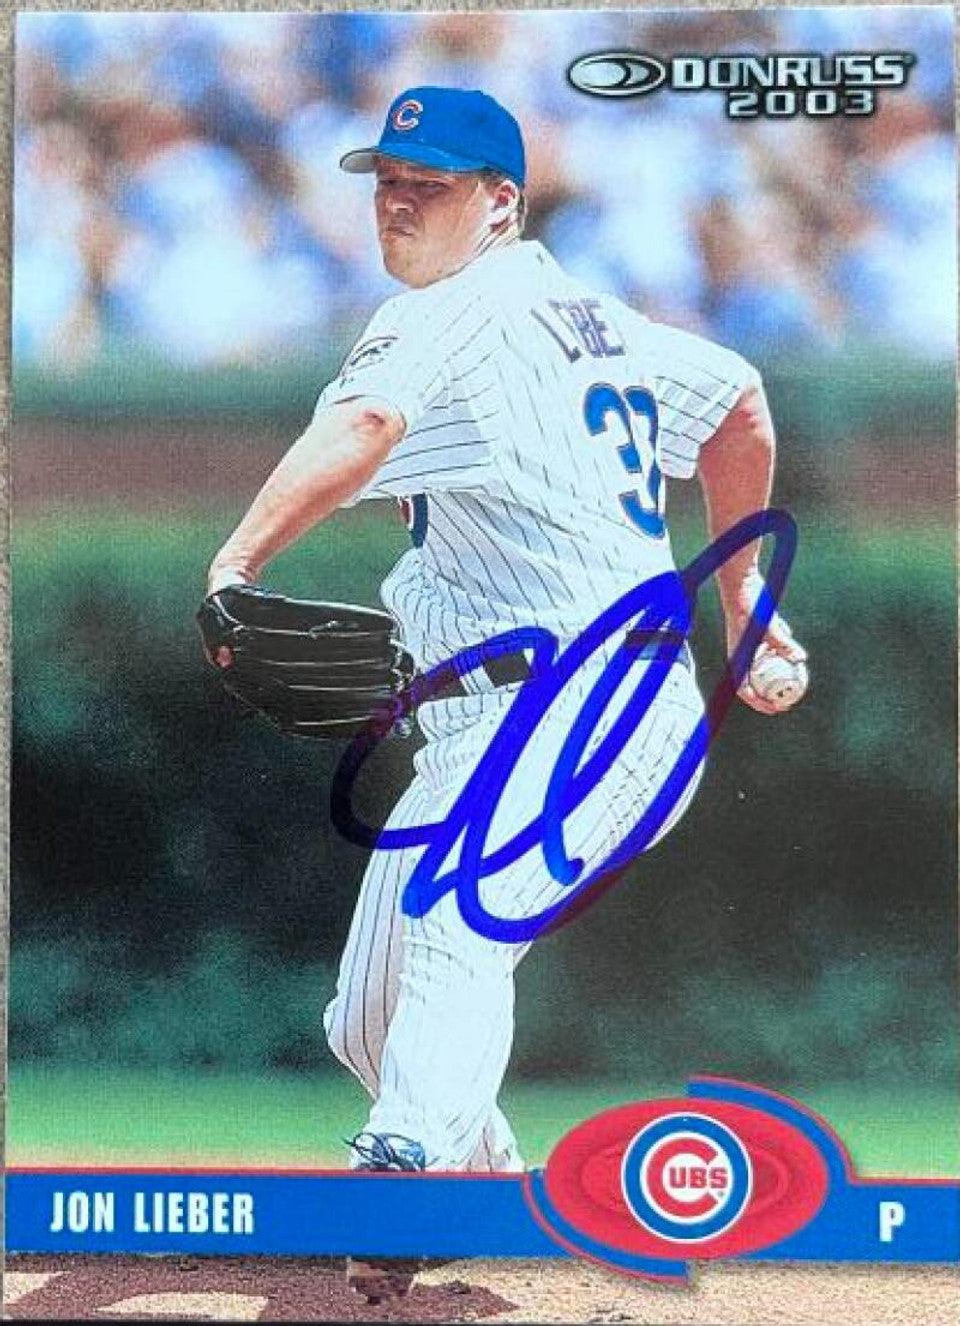 Jon Lieber Signed 2003 Donruss Baseball Card - Chicago Cubs - PastPros